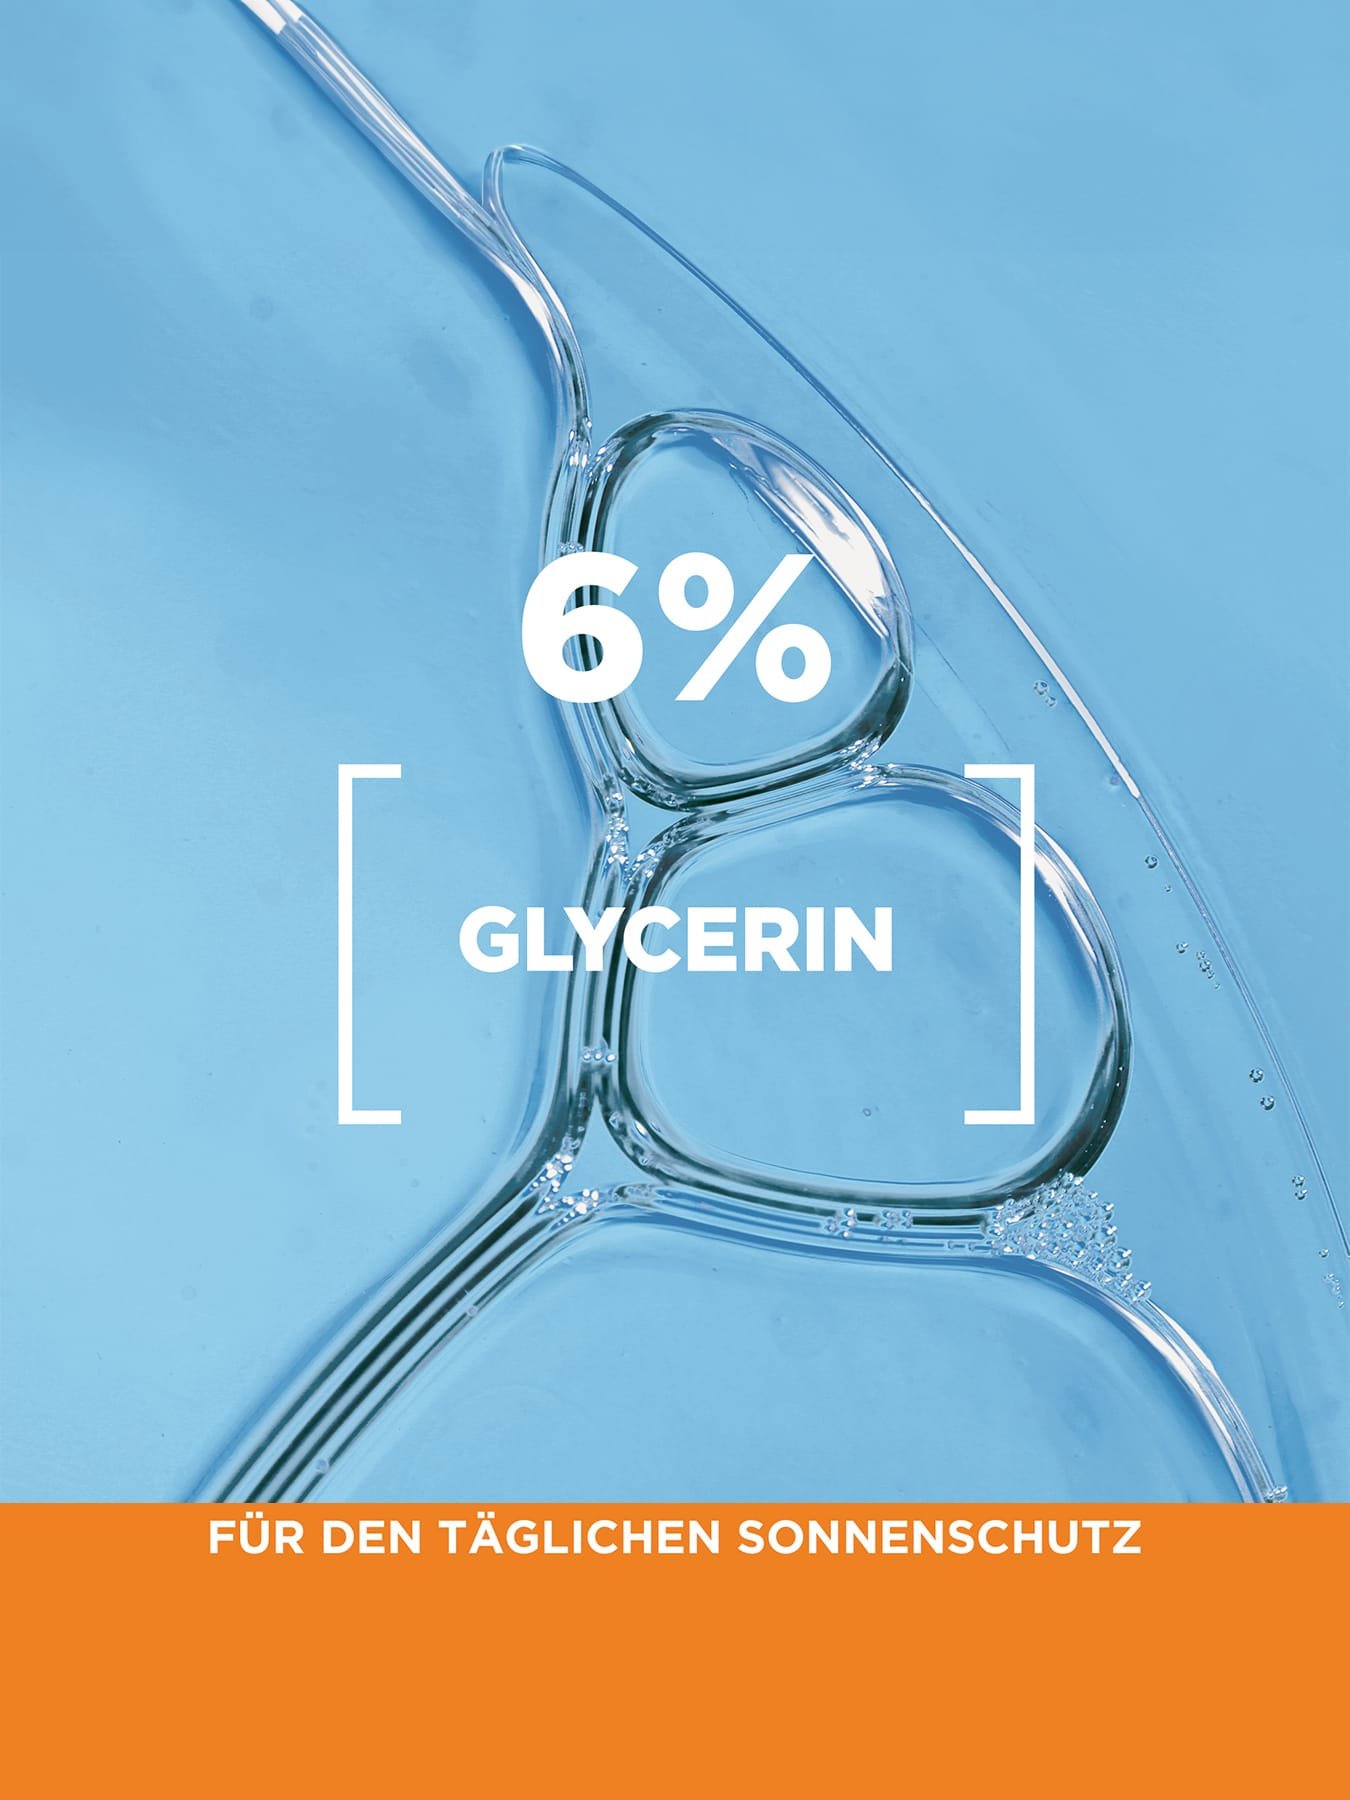 Detailanisicht einer klaren Flüssigkeit - Produktvorteil 6% Glycerin